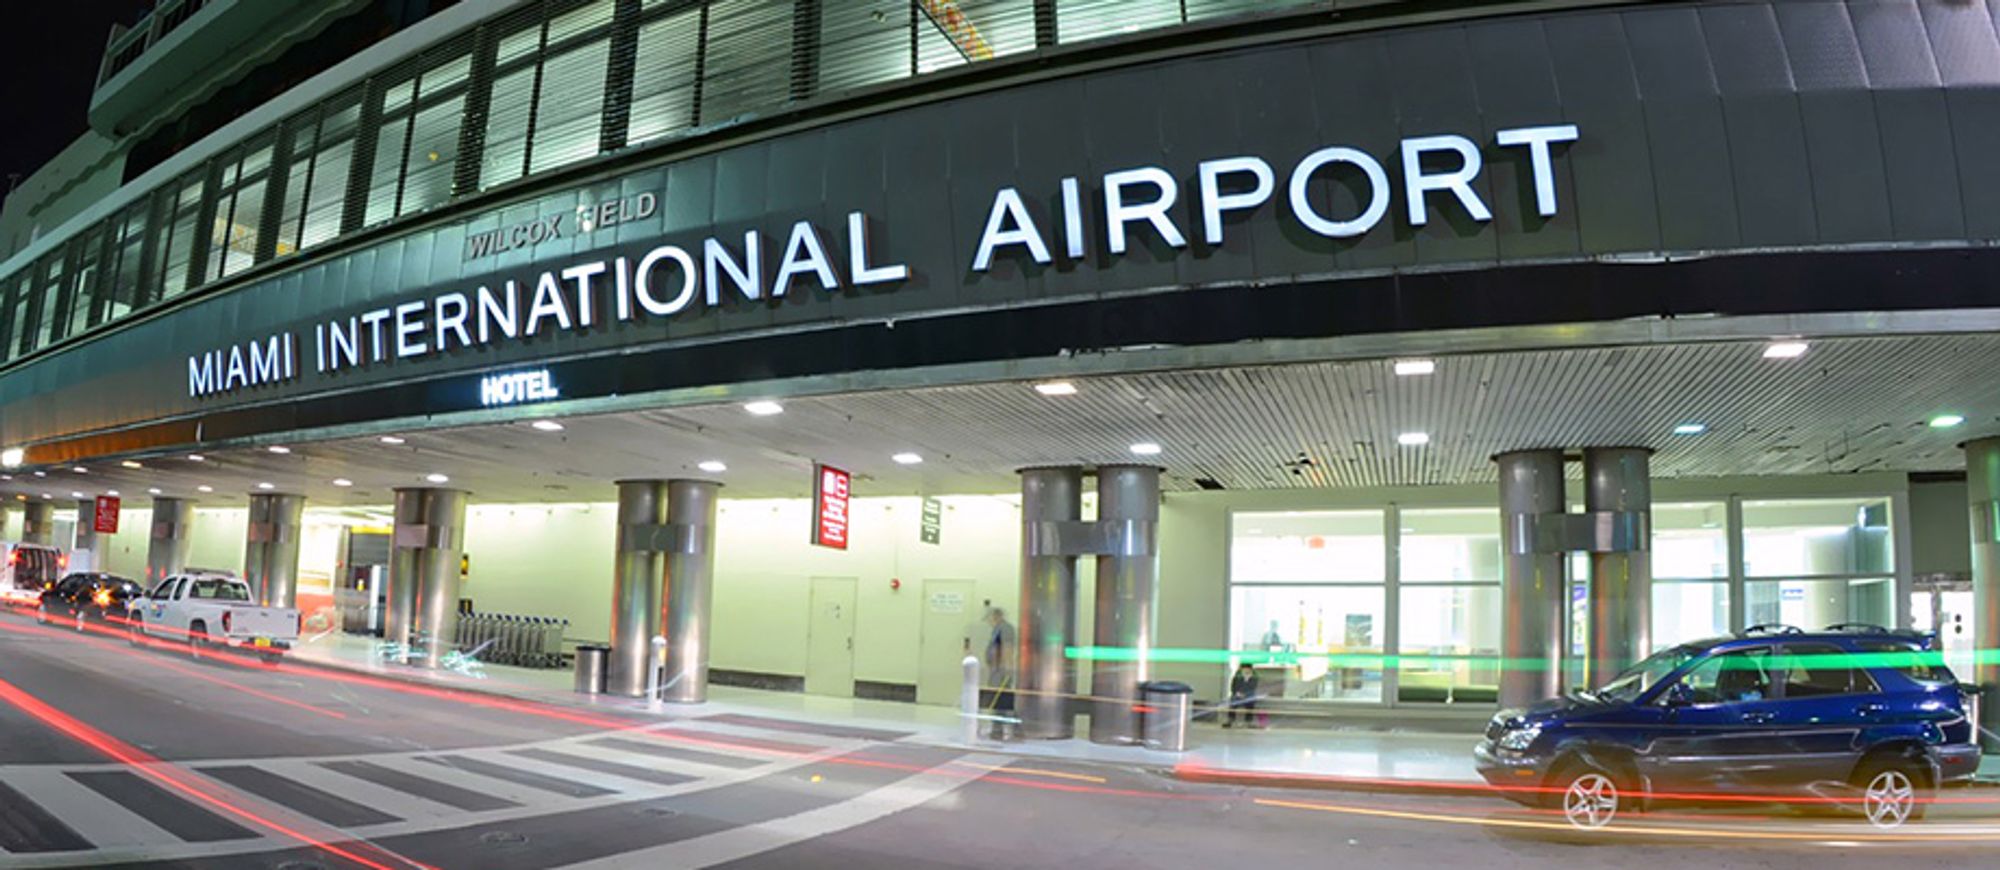 Miami International Airport (MIA) (Portuguese)